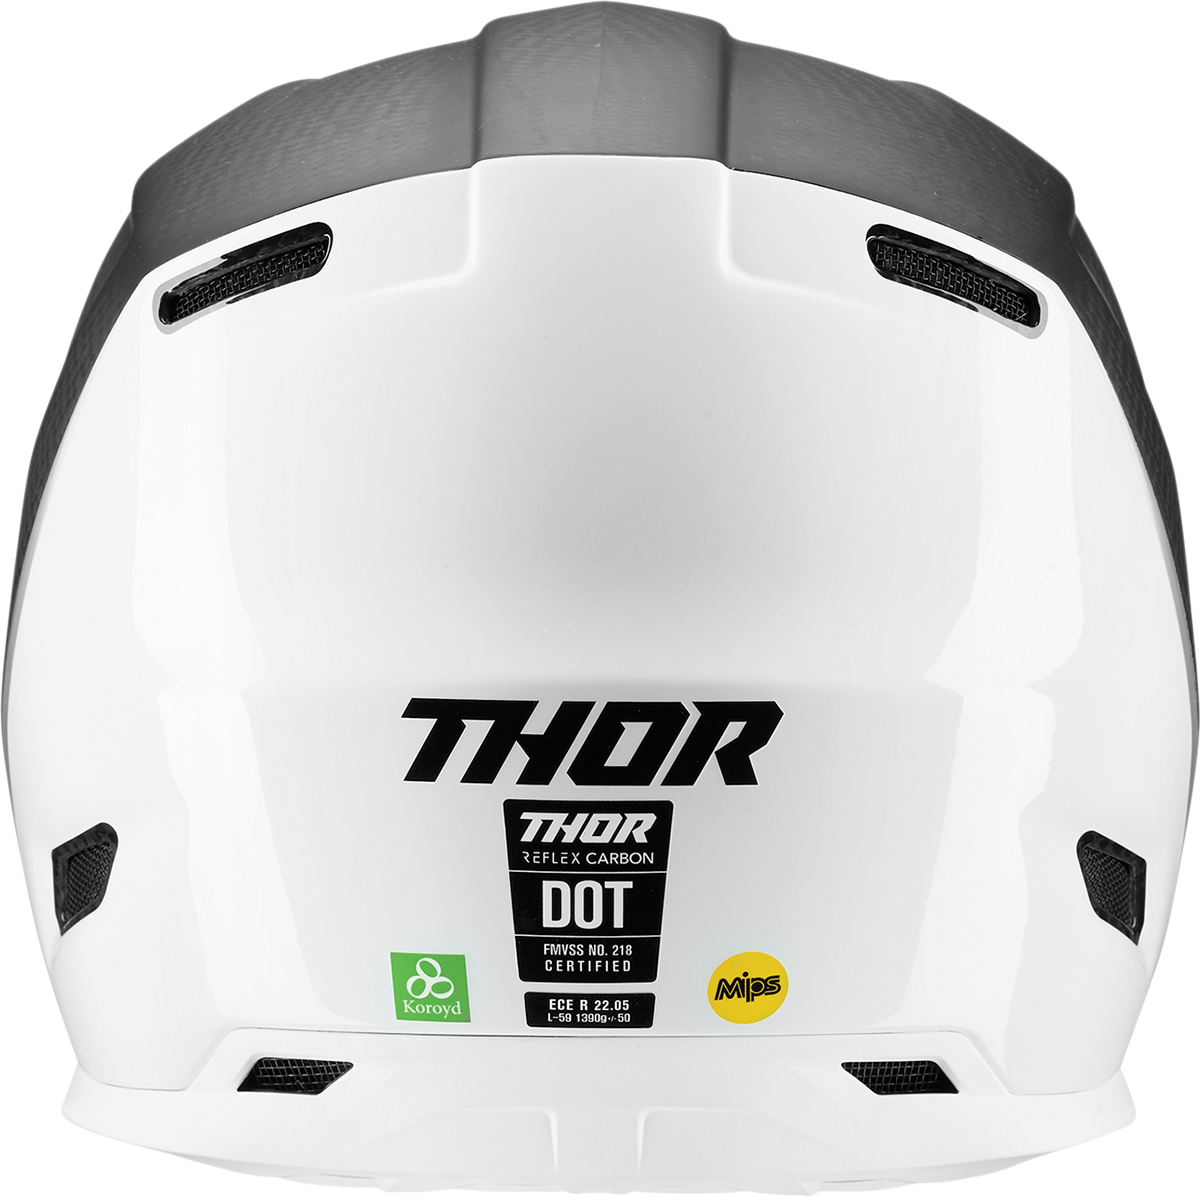 THOR Reflex Helmet - Polar - Carbon/White - MIPS? - XS 0110-7813